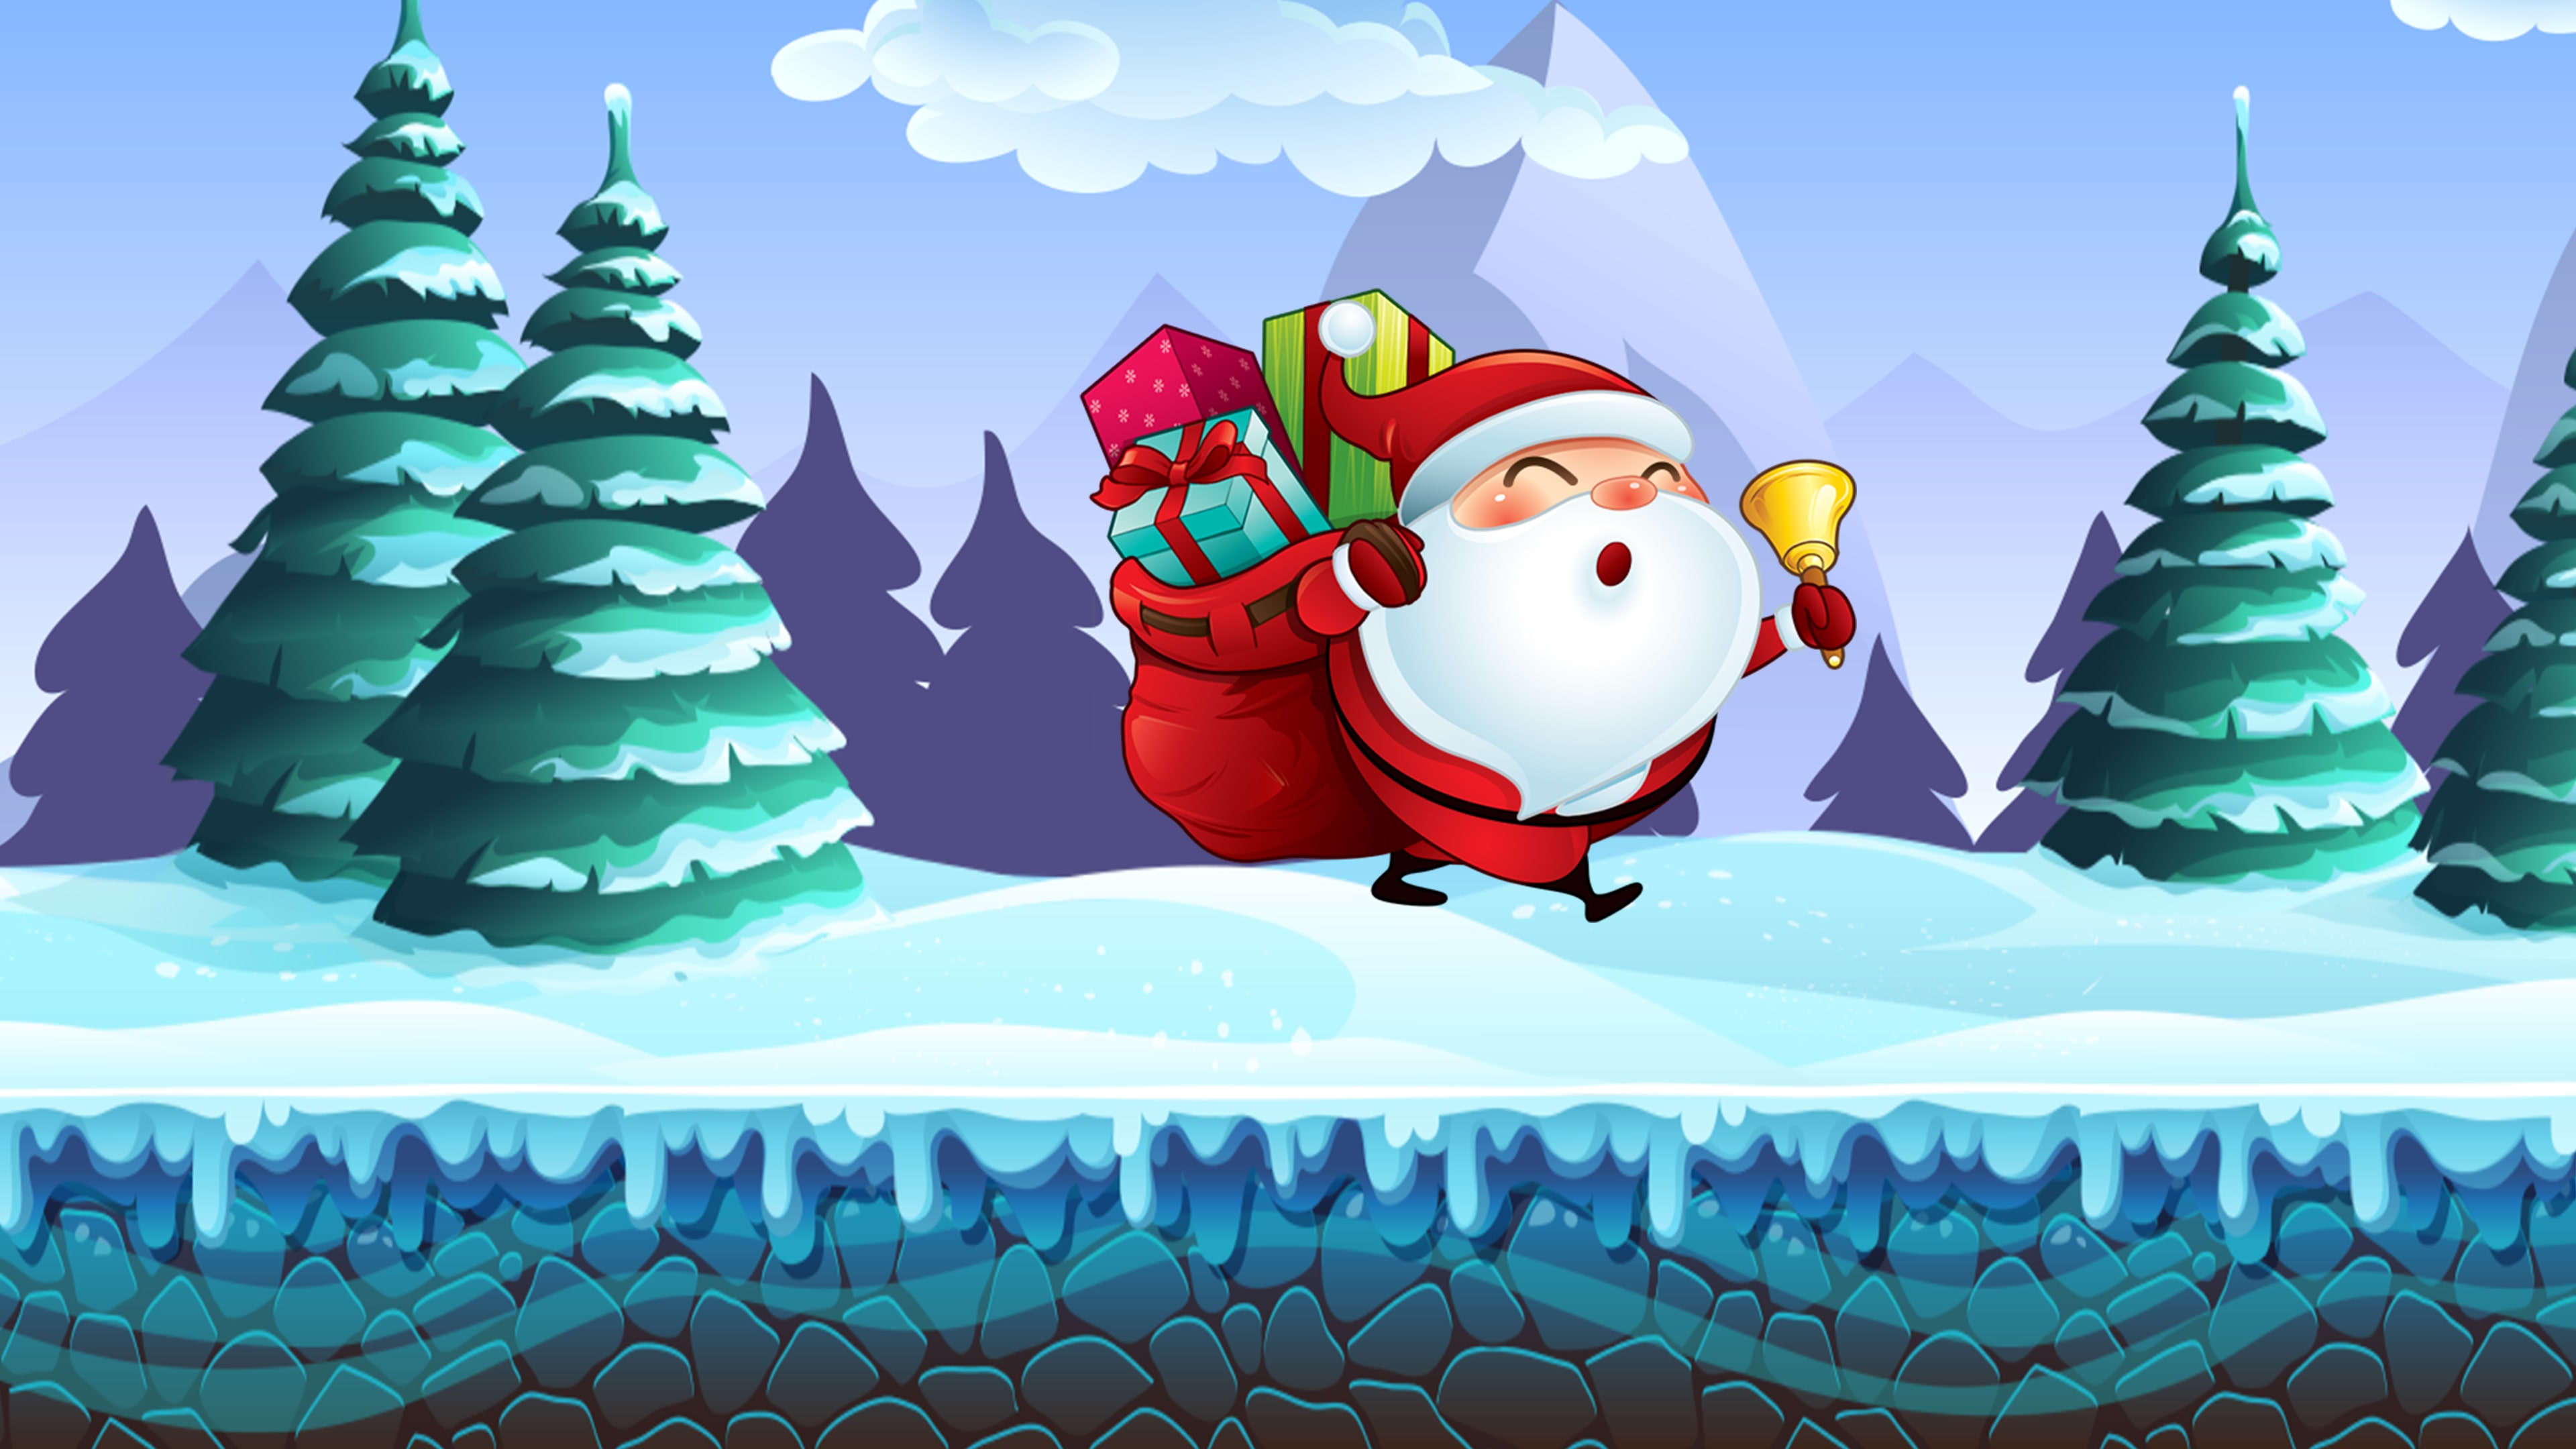 ChristmasRun - Avatar Full Game Bundle